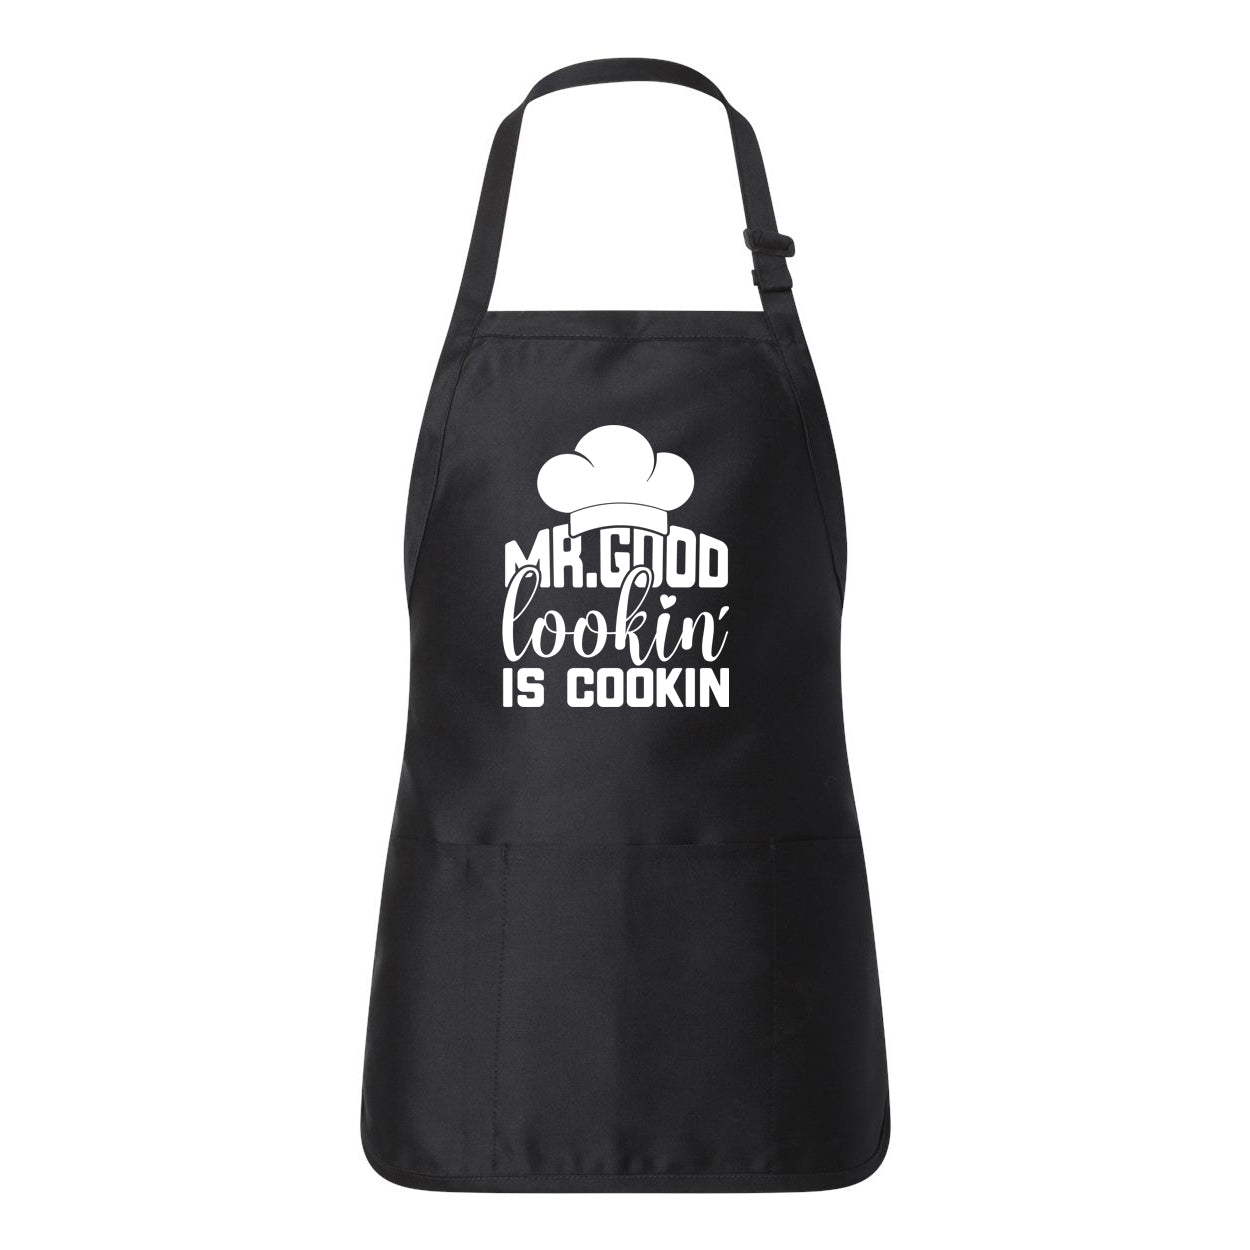 Good Lookin Is Cookin | Apron